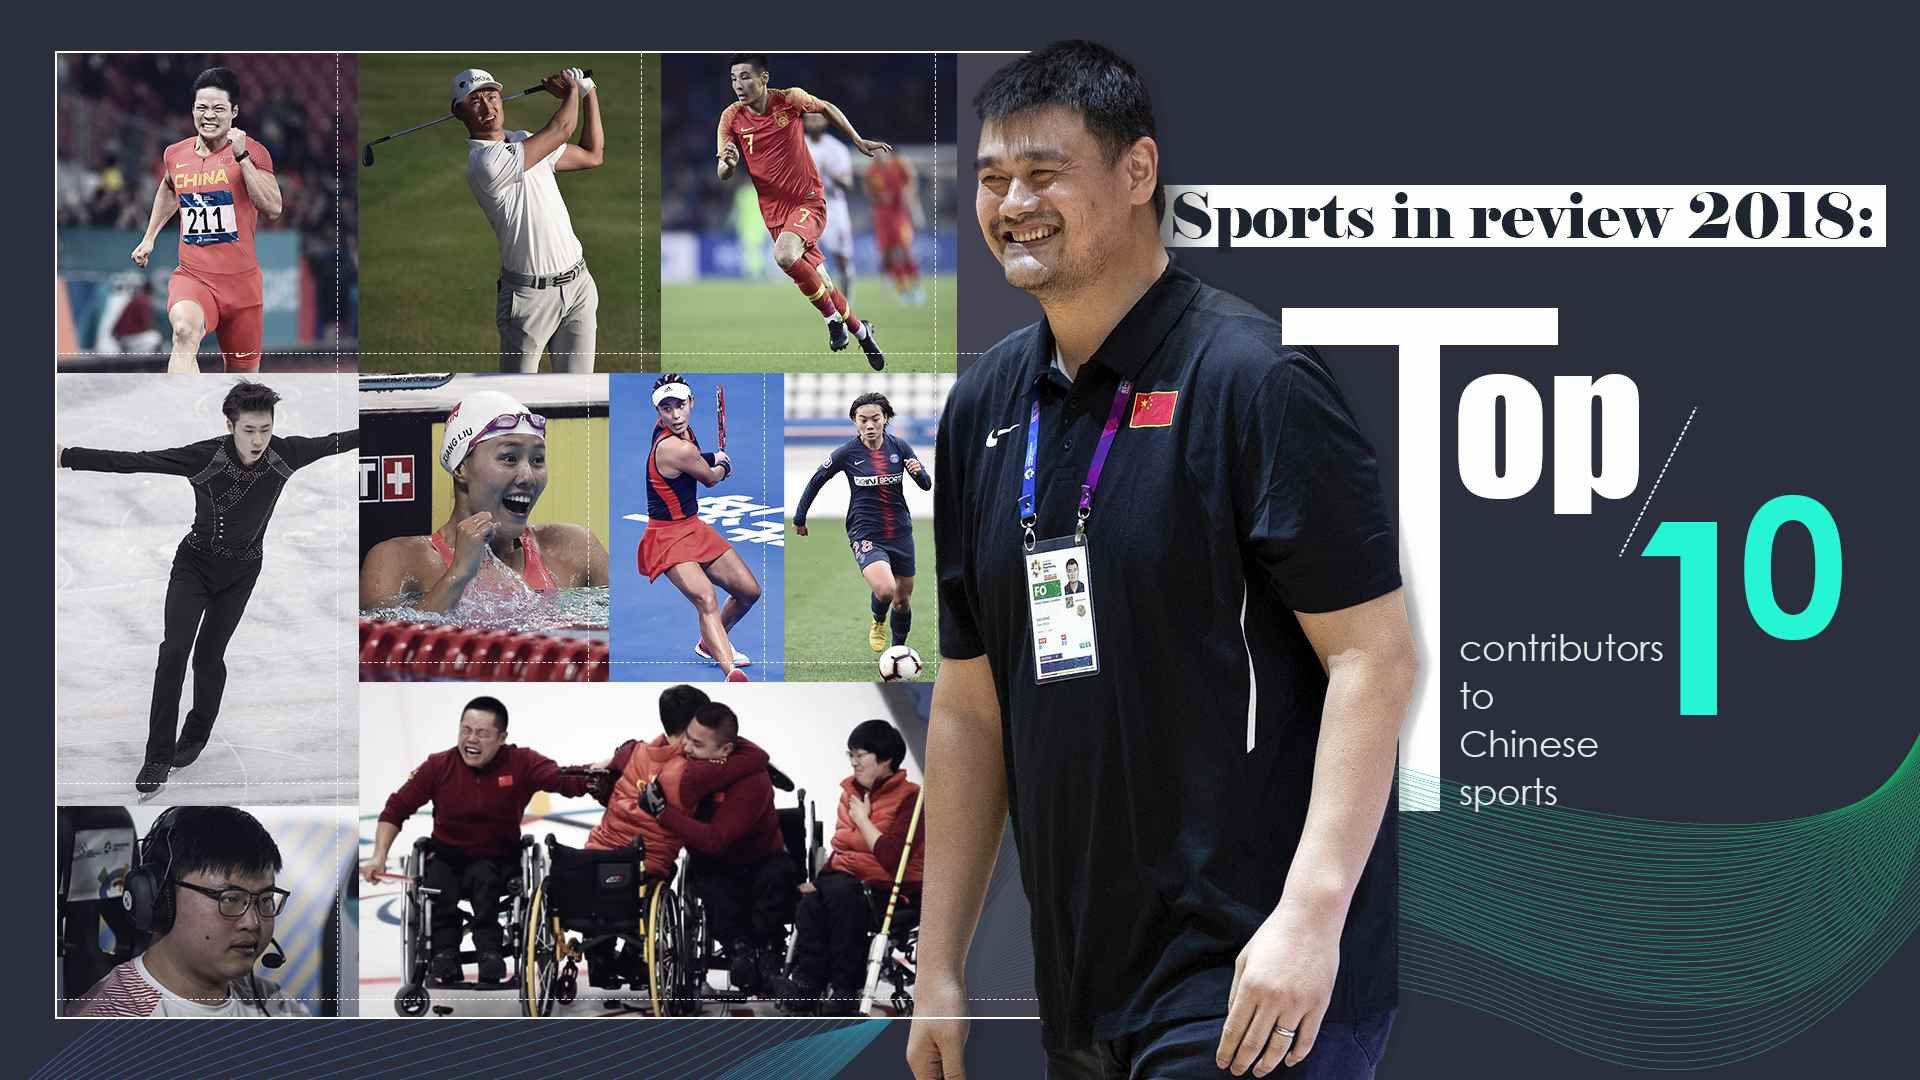 UZI与姚明共同入选中国体育10大贡献者,成唯一